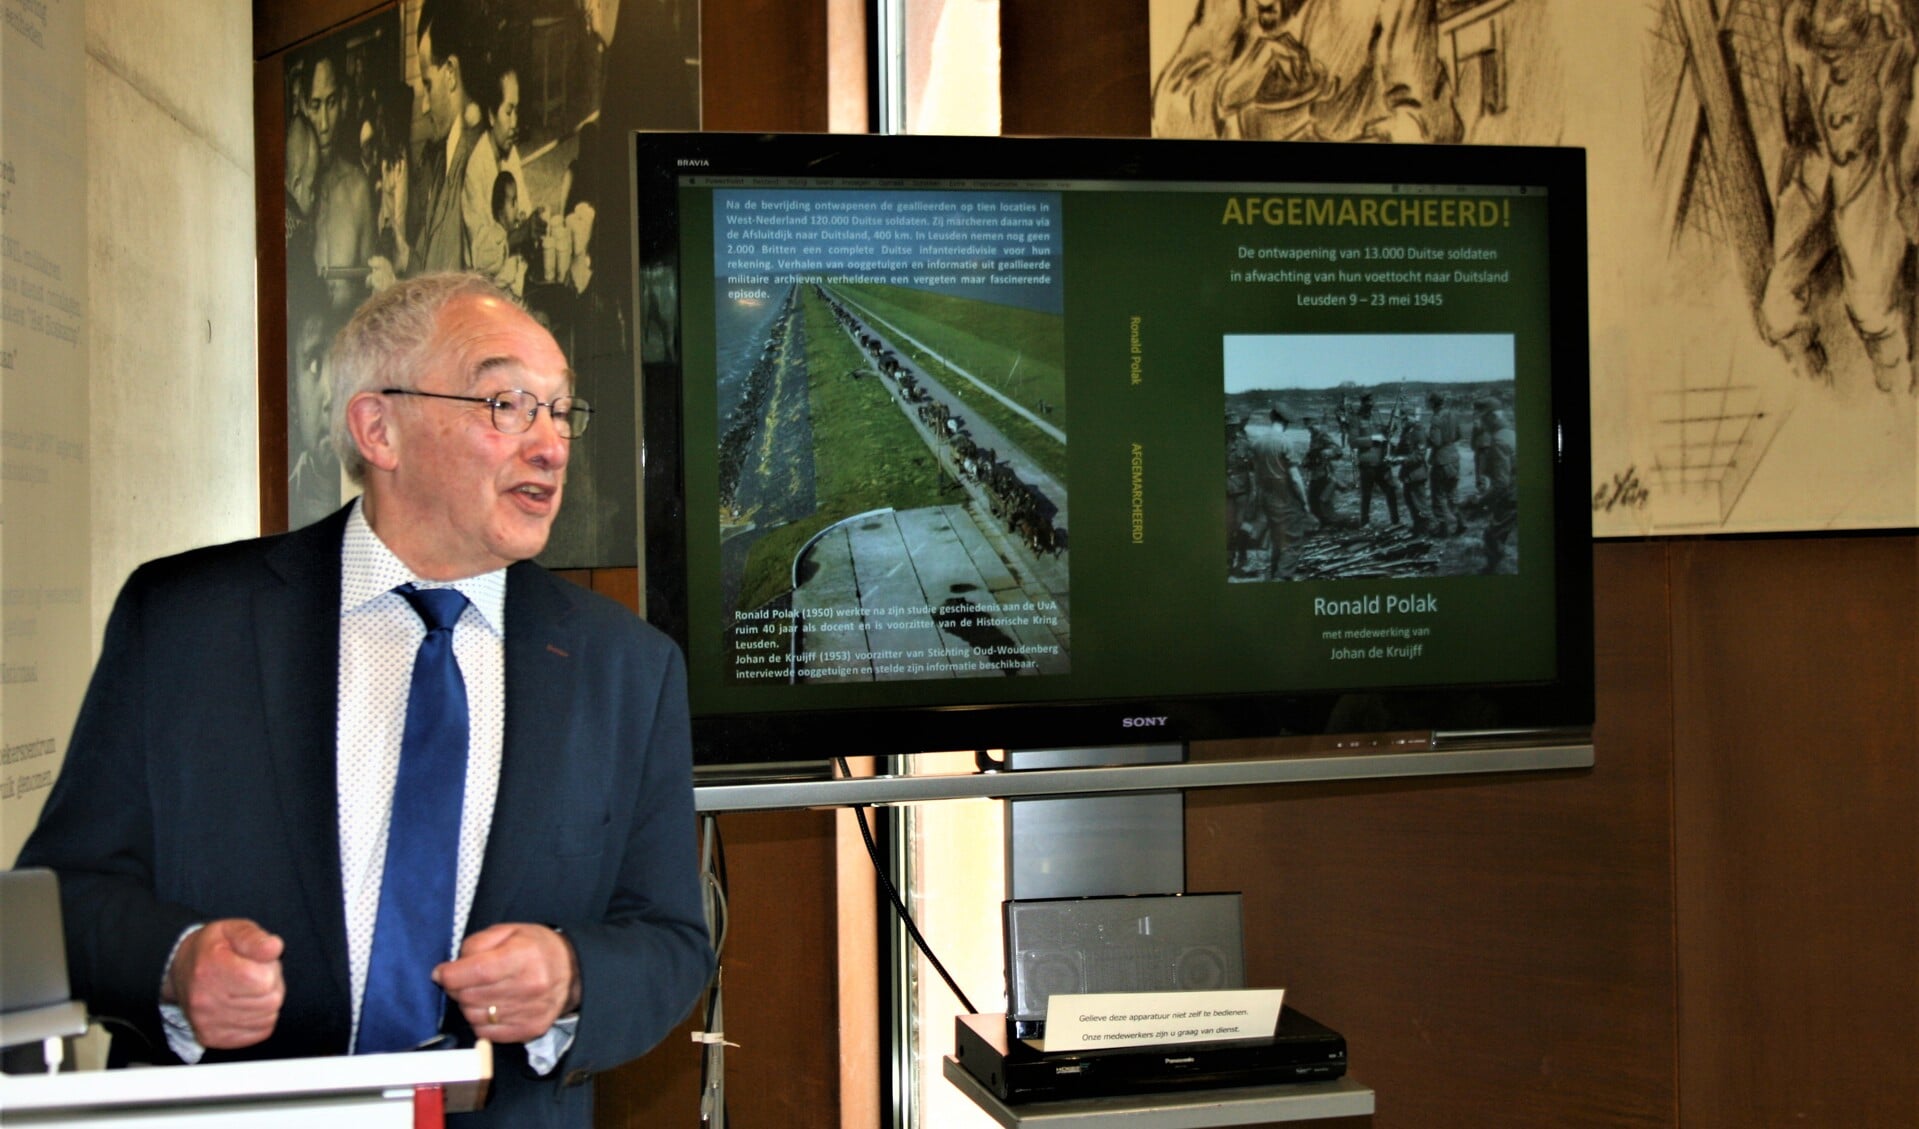 Roland Polak tijdens de presentatie van zijn boek 'Afgemarcheerd' in Kamp Amersfoort.